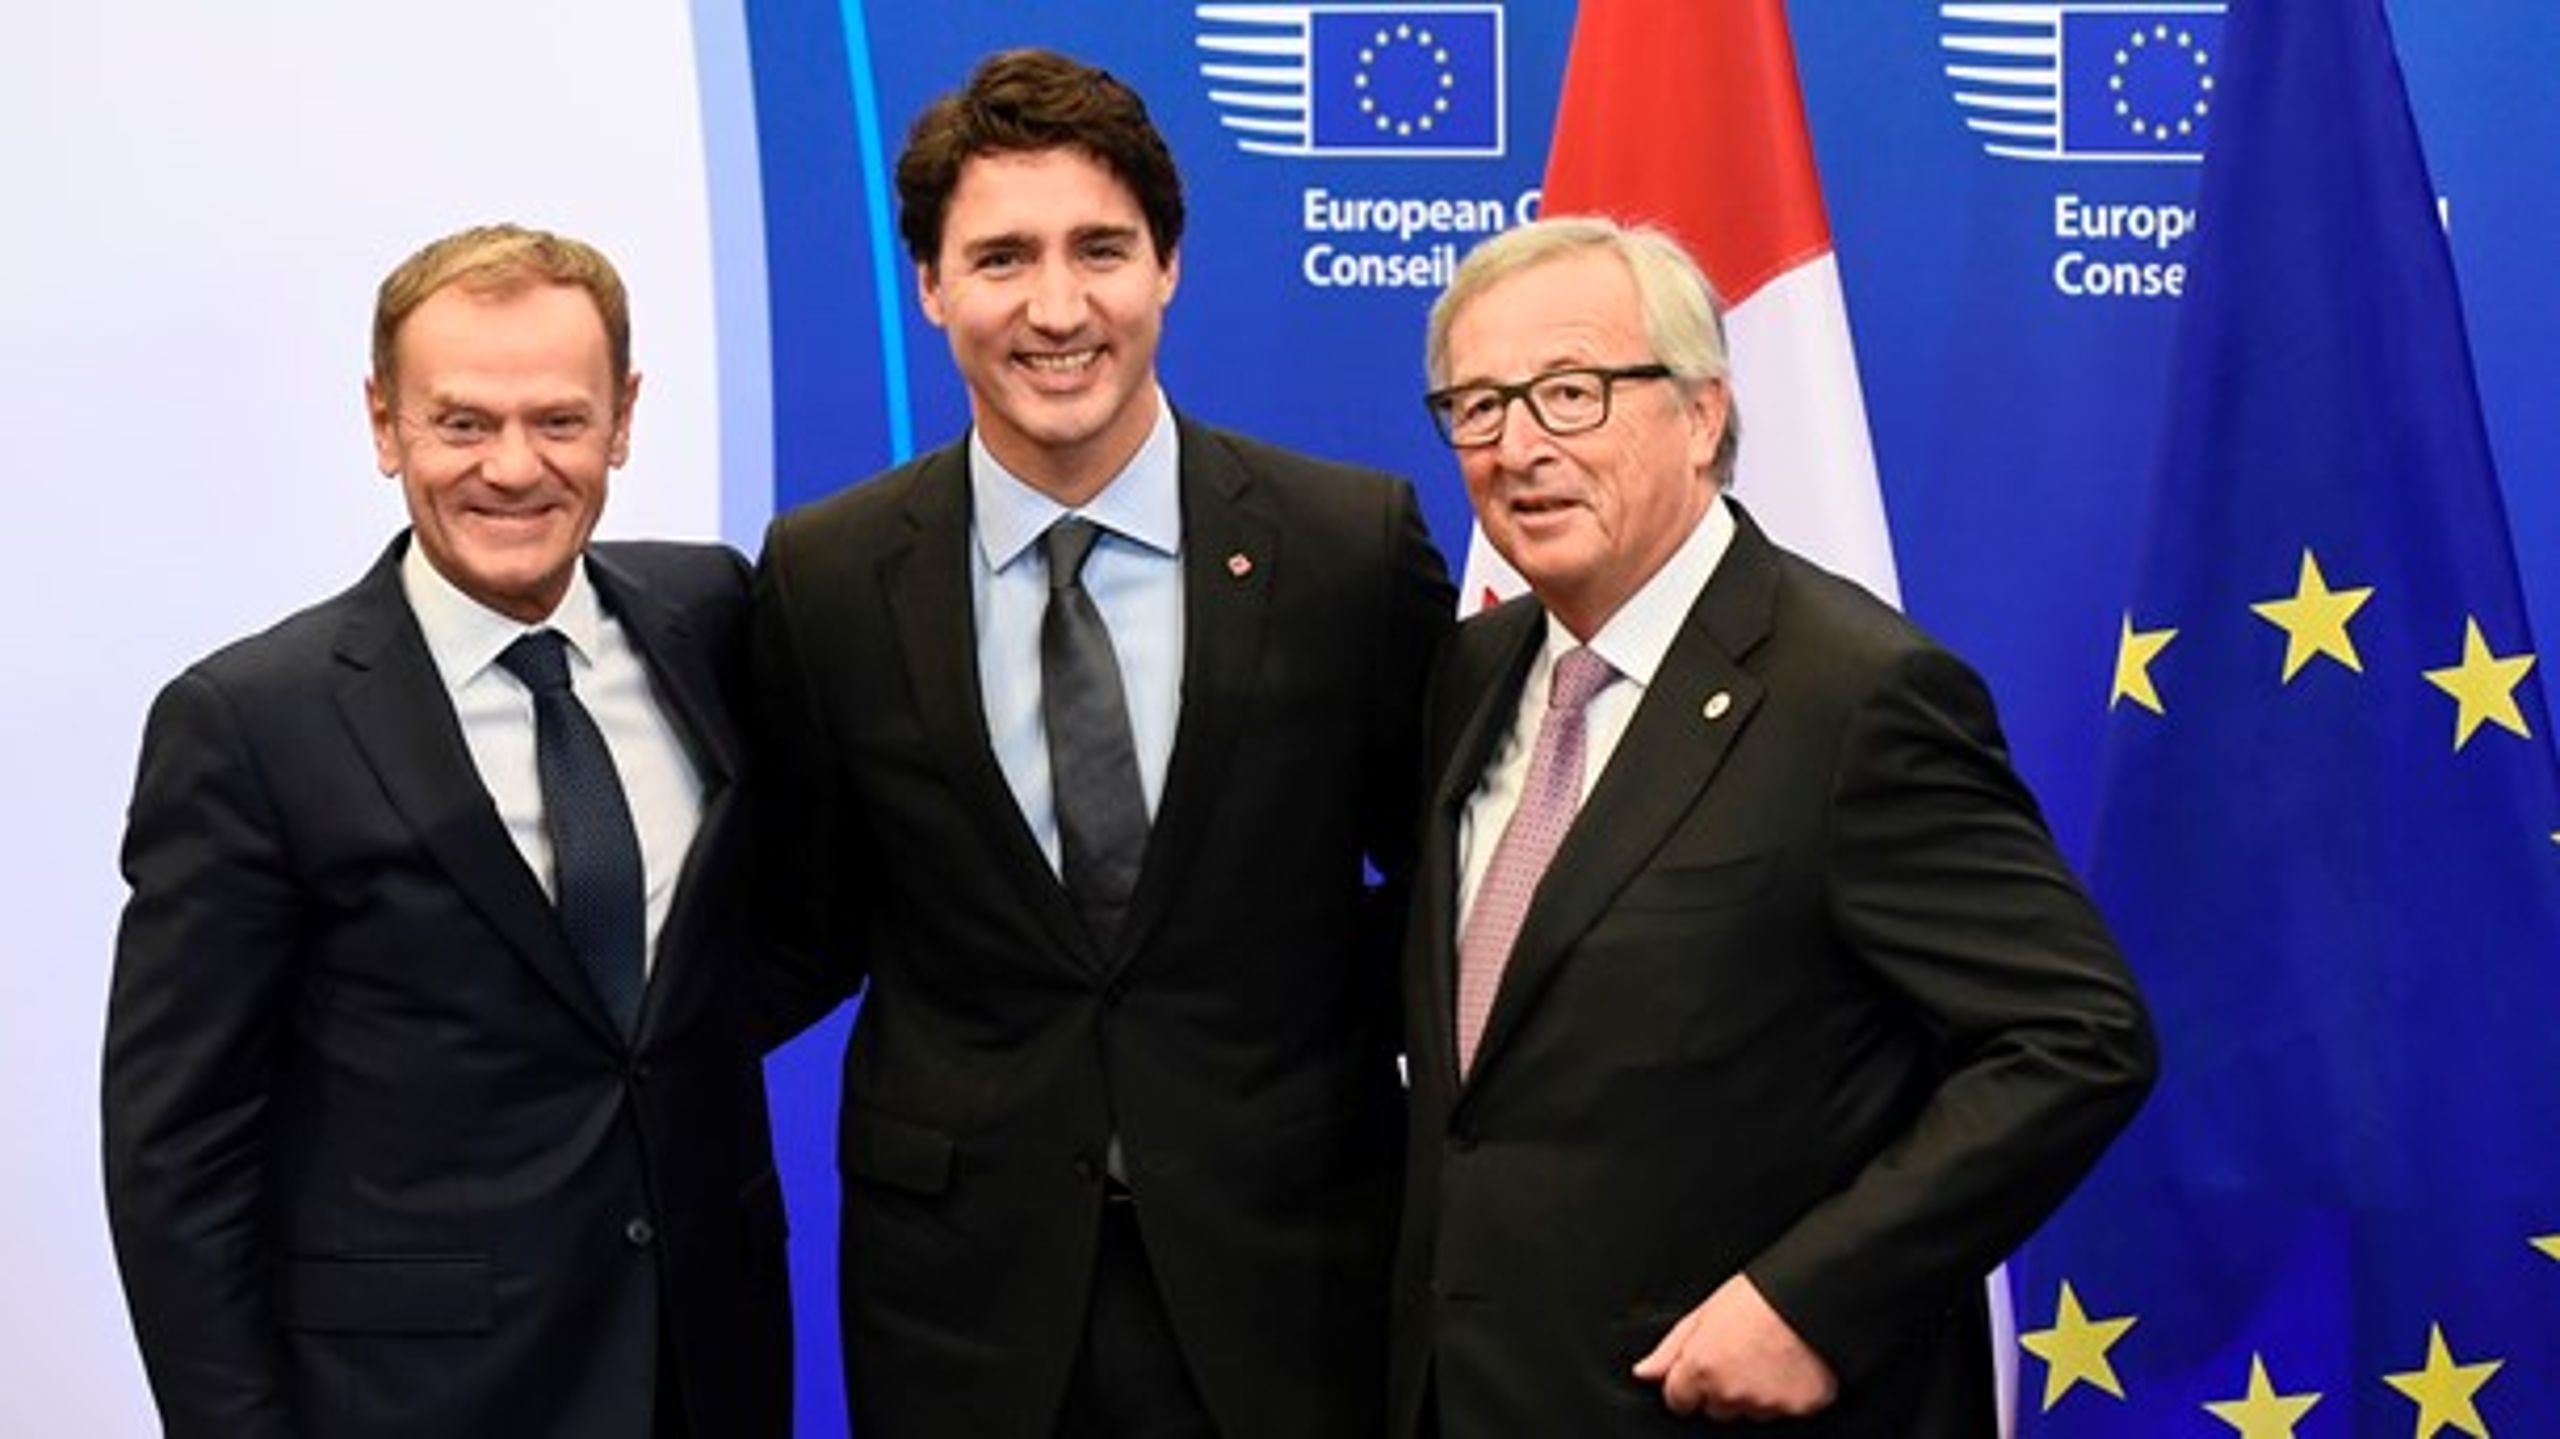 Den omdiskuterede handelsaftale, som EU og Canada skrev under på sidst i oktober, skal i denne uge diskuteres blandt både EU-ministre og europaparlamentarikere.